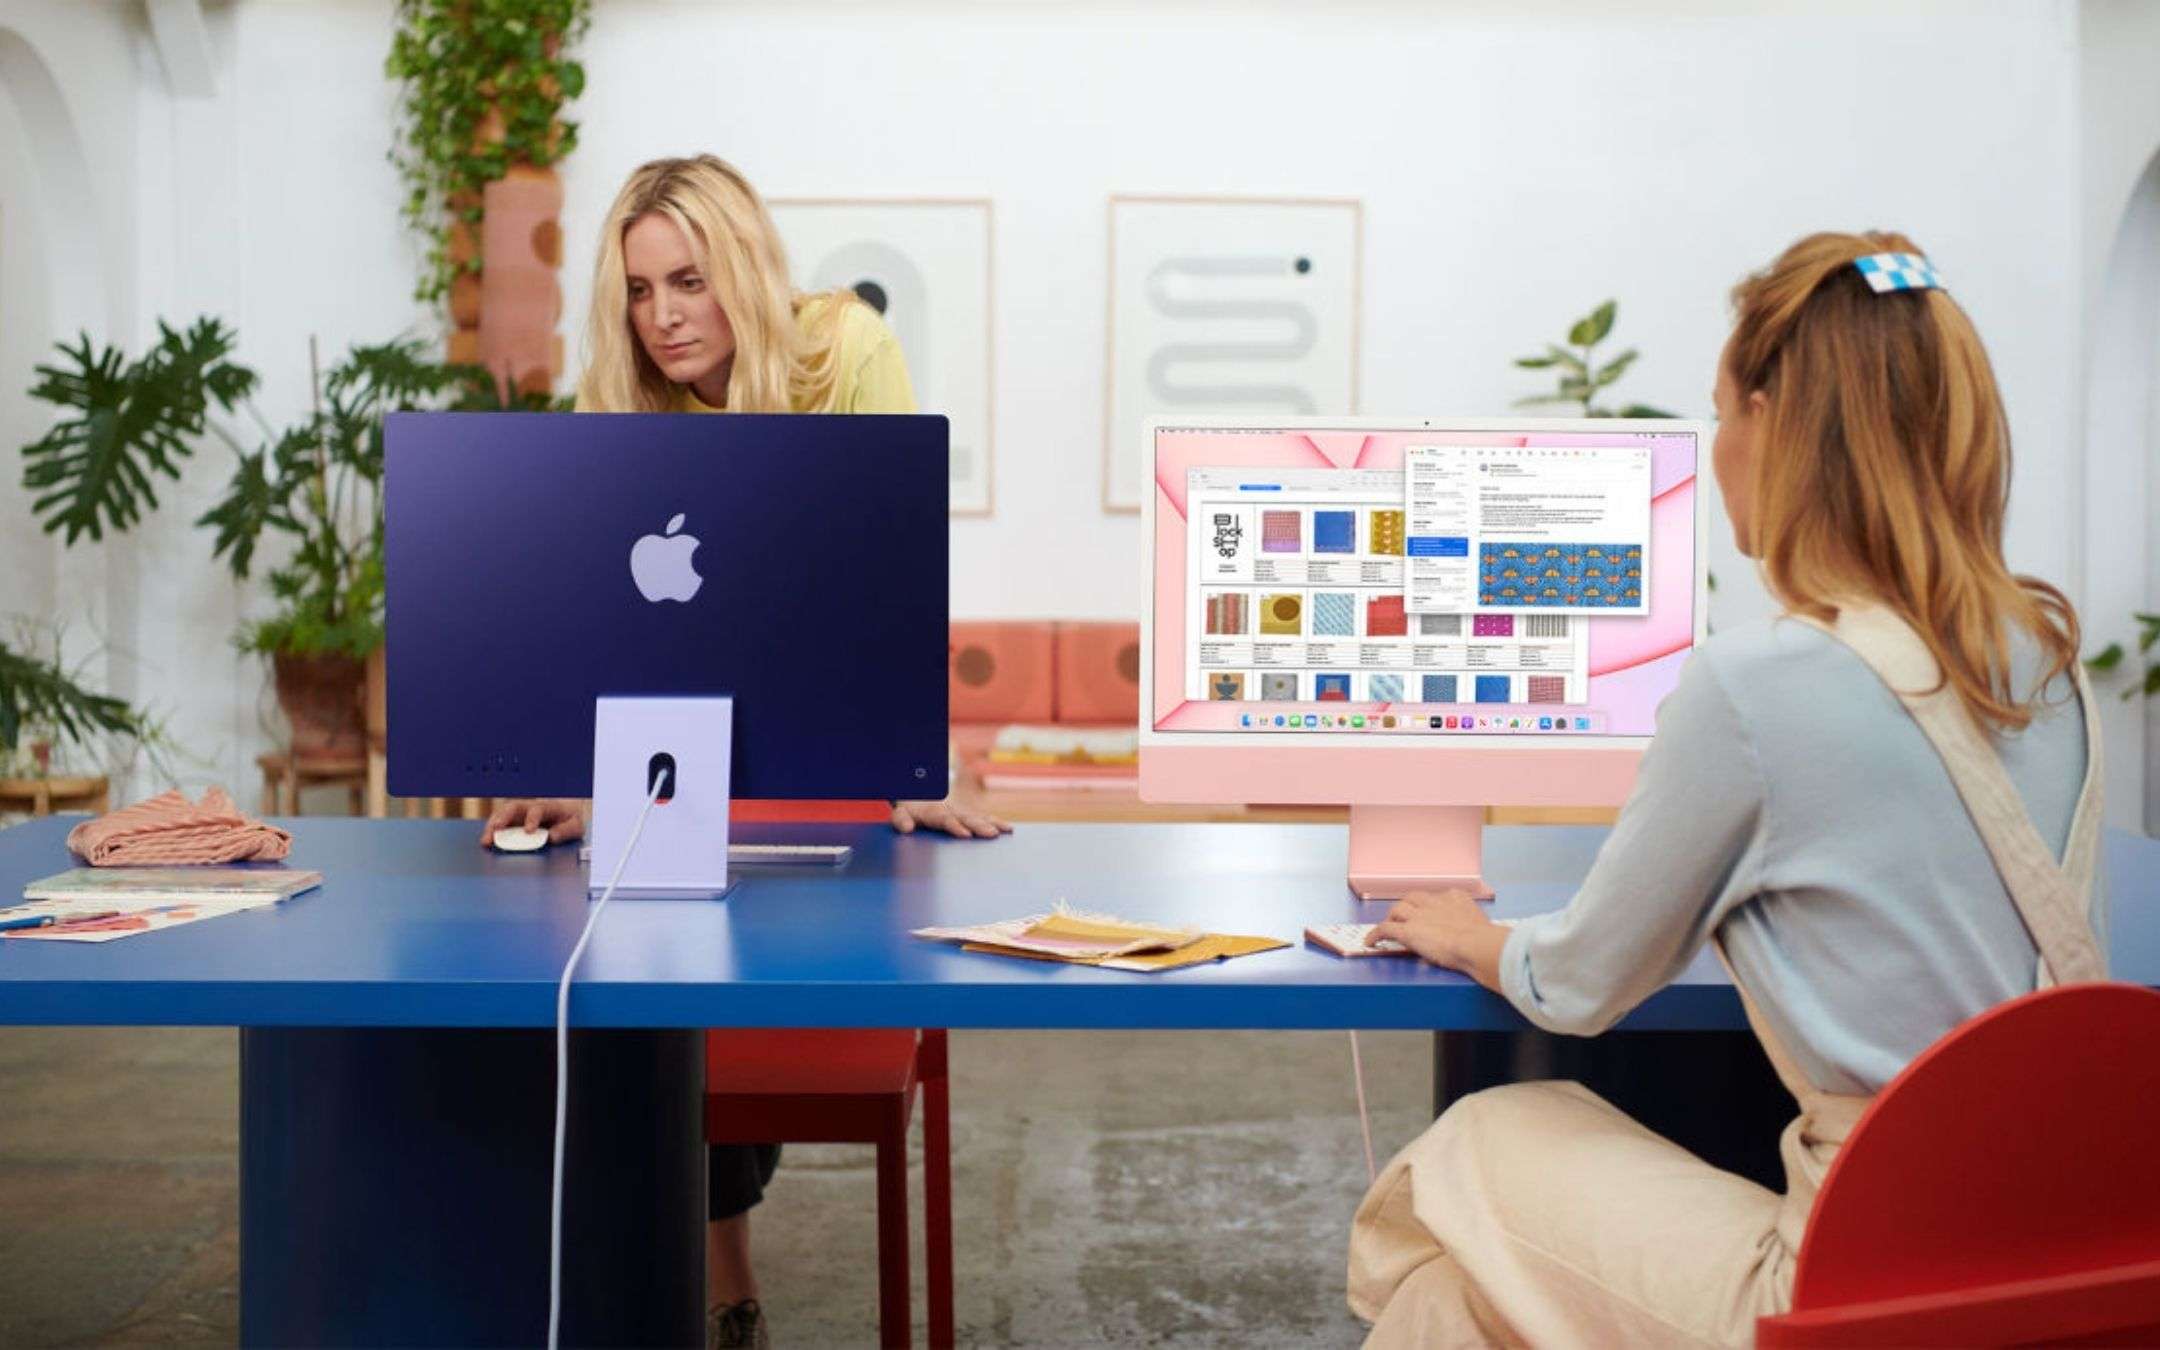 iMac 2021 sfida Mac G3: generazioni a confronto (VIDEO)